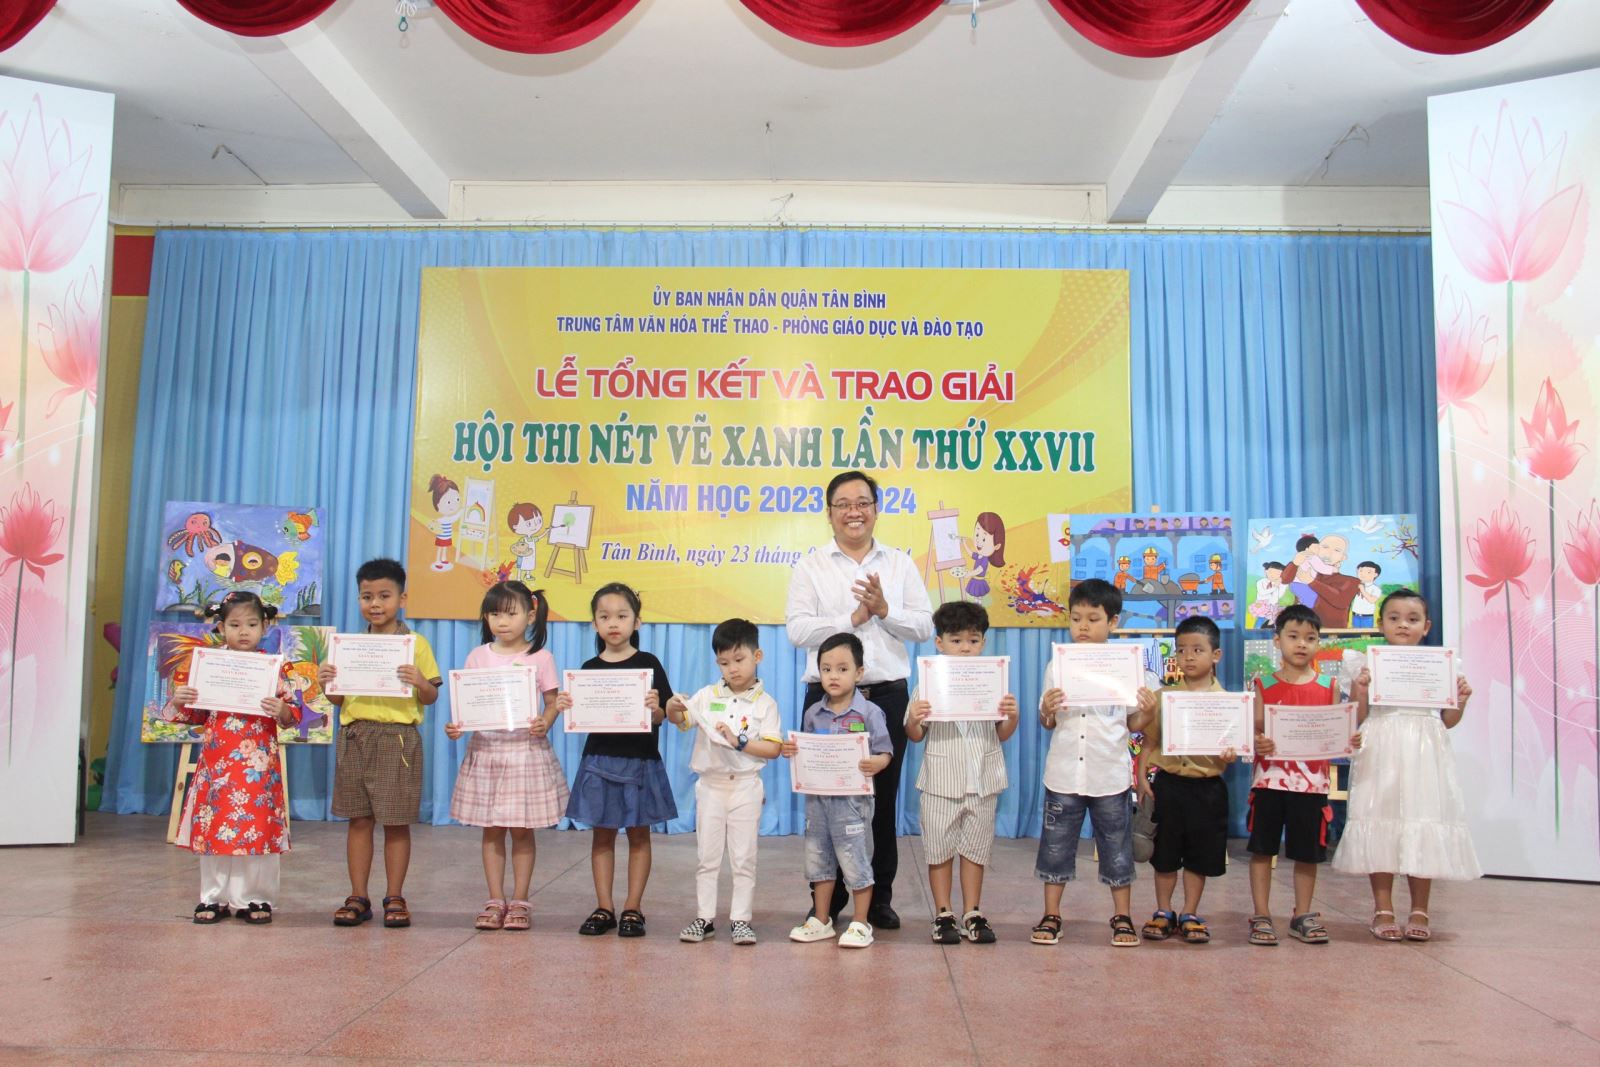 Quận Tân Bình: Tổ chức Tổng kết và trao giải Hội thi “Nét vẽ xanh” lần thứ XXVII năm học 2023-2024